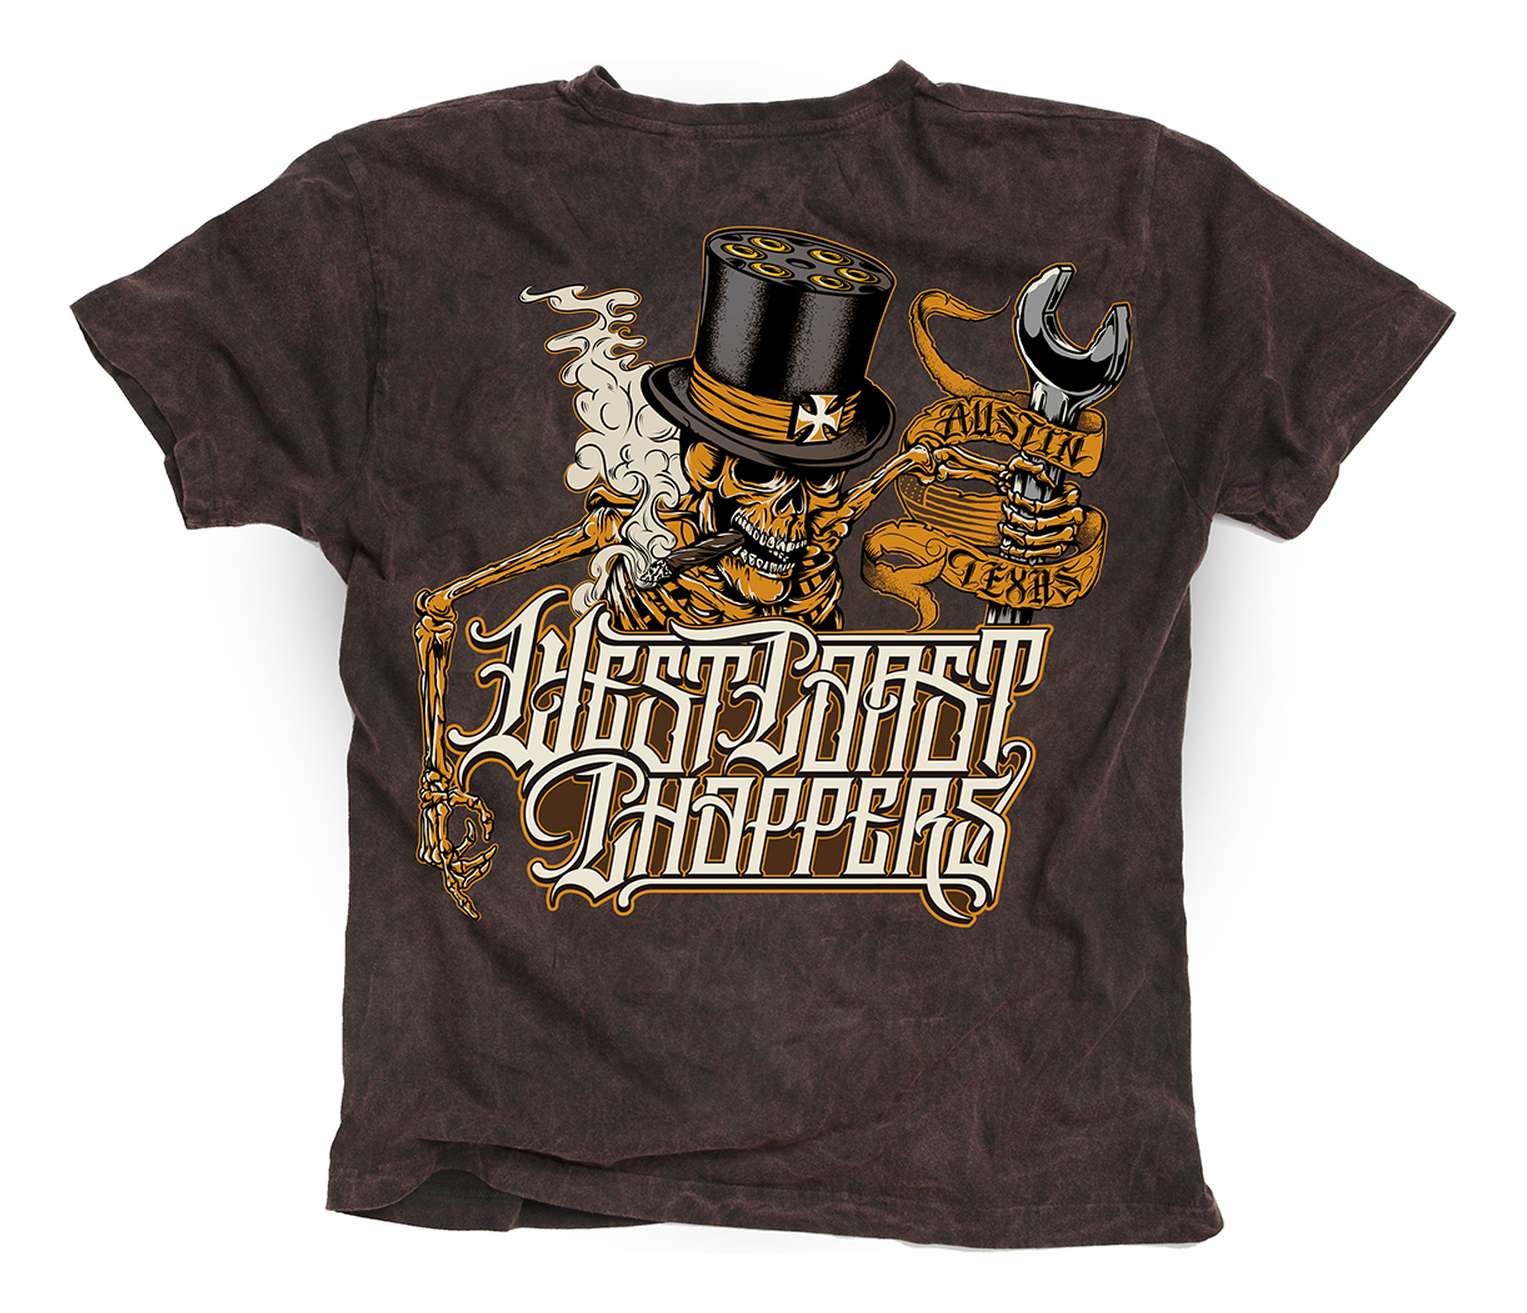 West Coast Choppers - WCC Onride T-Shirt - Braun